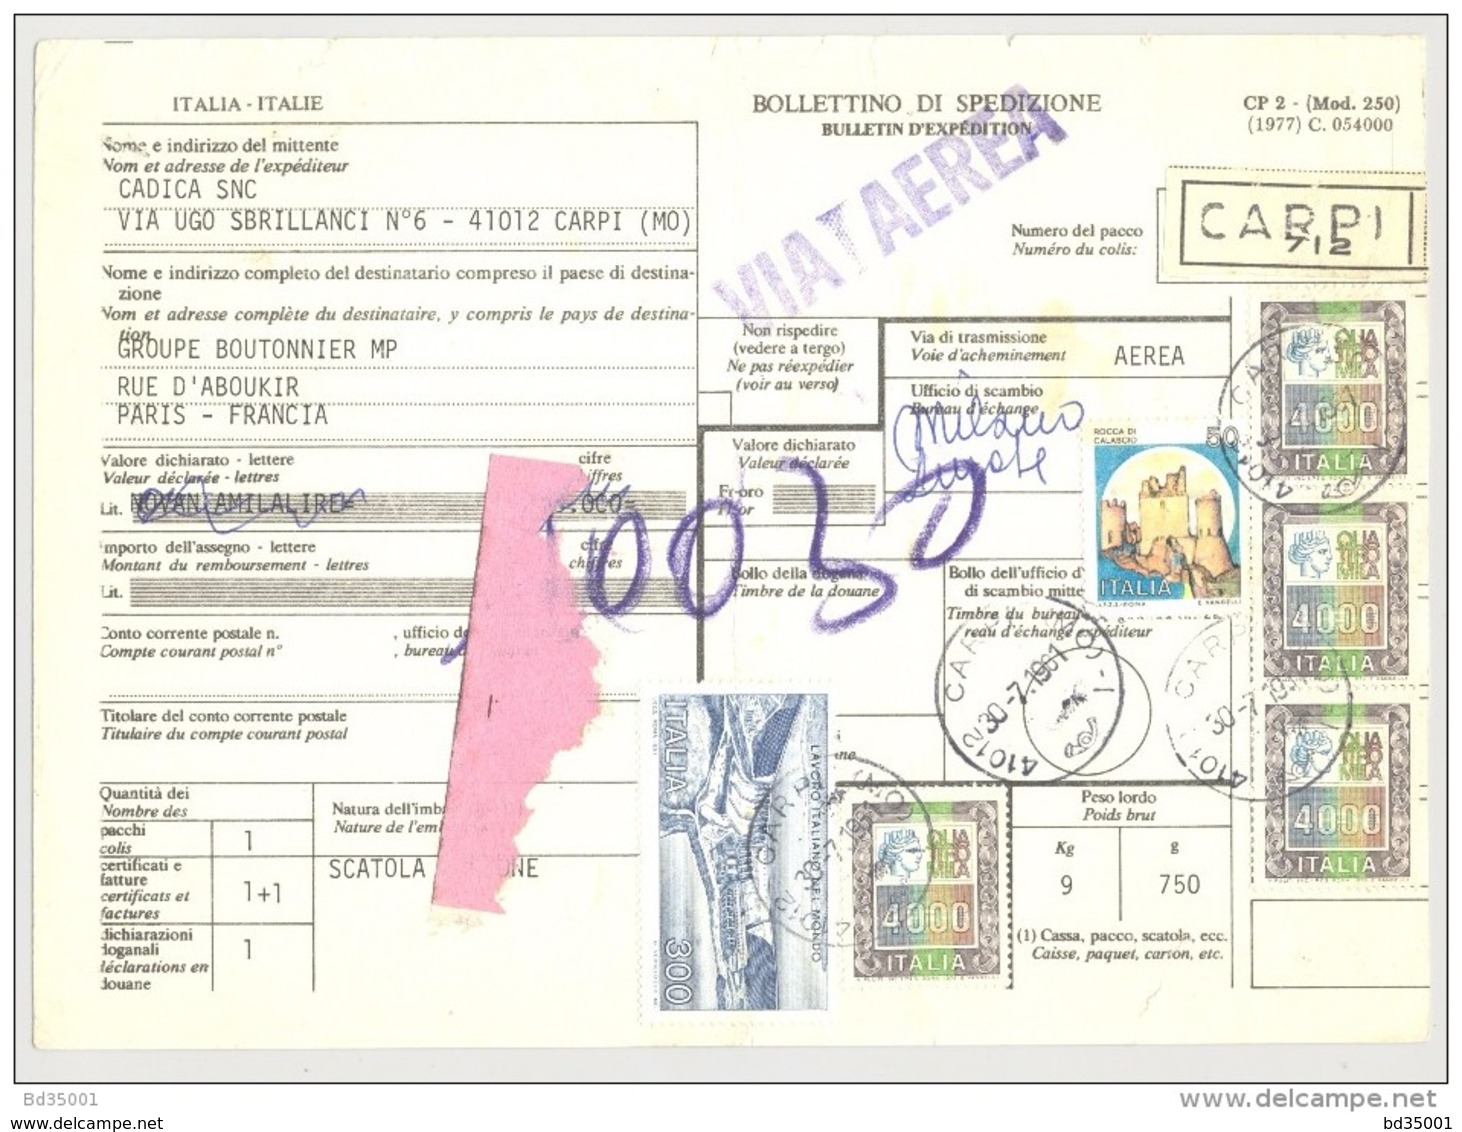 Bulletin D'Expédition - Italie - Cachets Et Vignette CARPI - 1981 - Griffe VIA AEREA - Timbres-Poste ITALIA - Colis-postaux